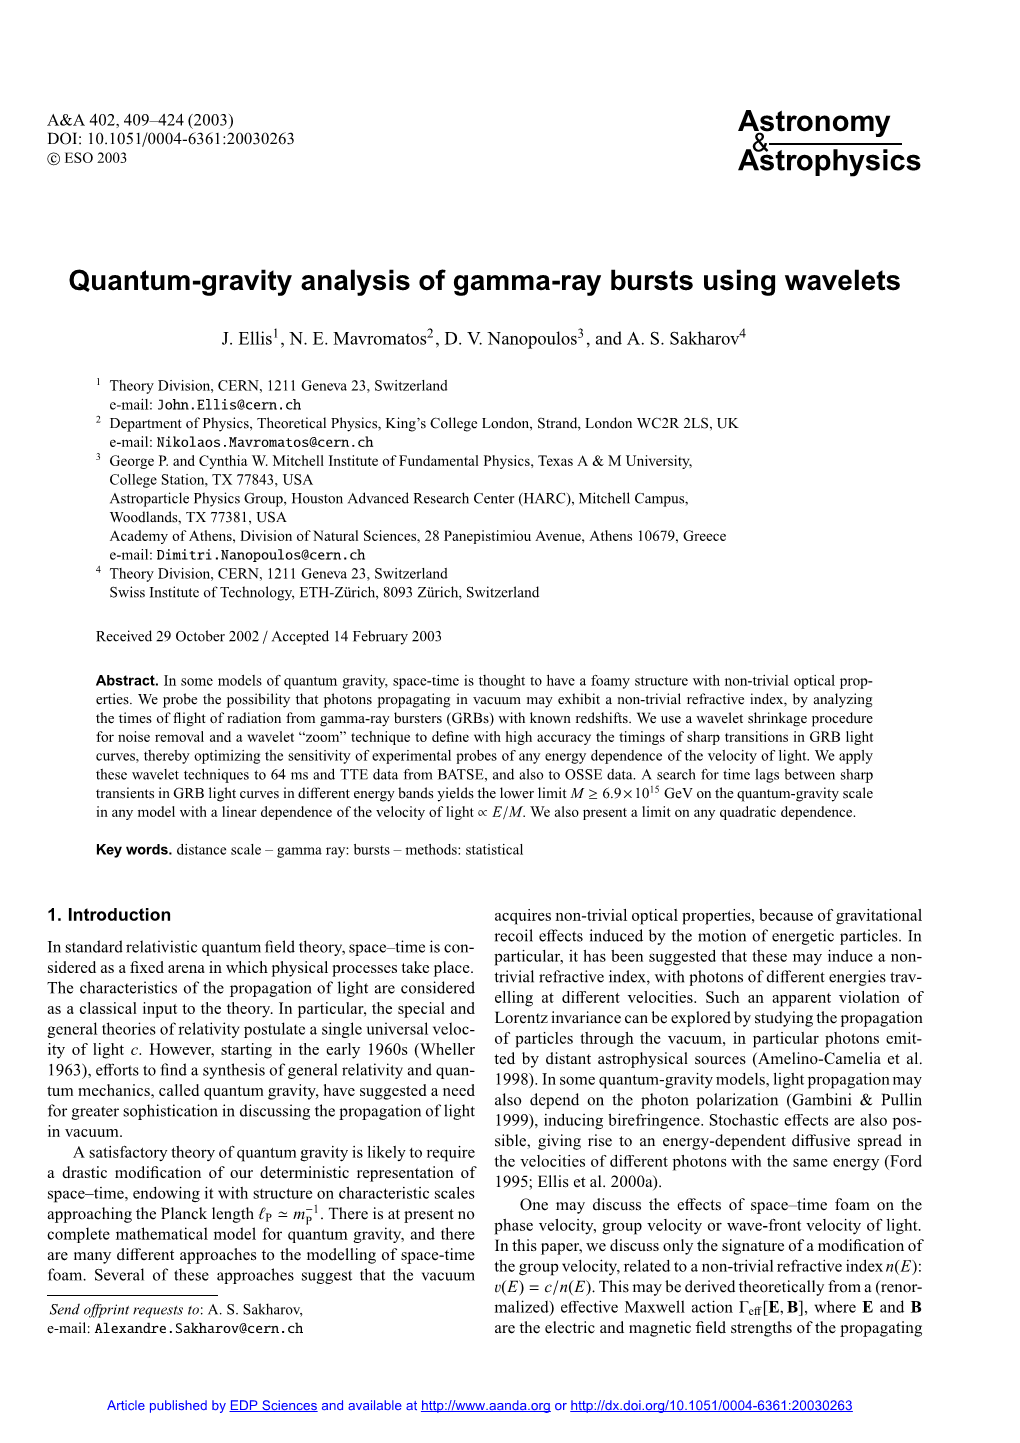 Quantum-Gravity Analysis of Gamma-Ray Bursts Using Wavelets